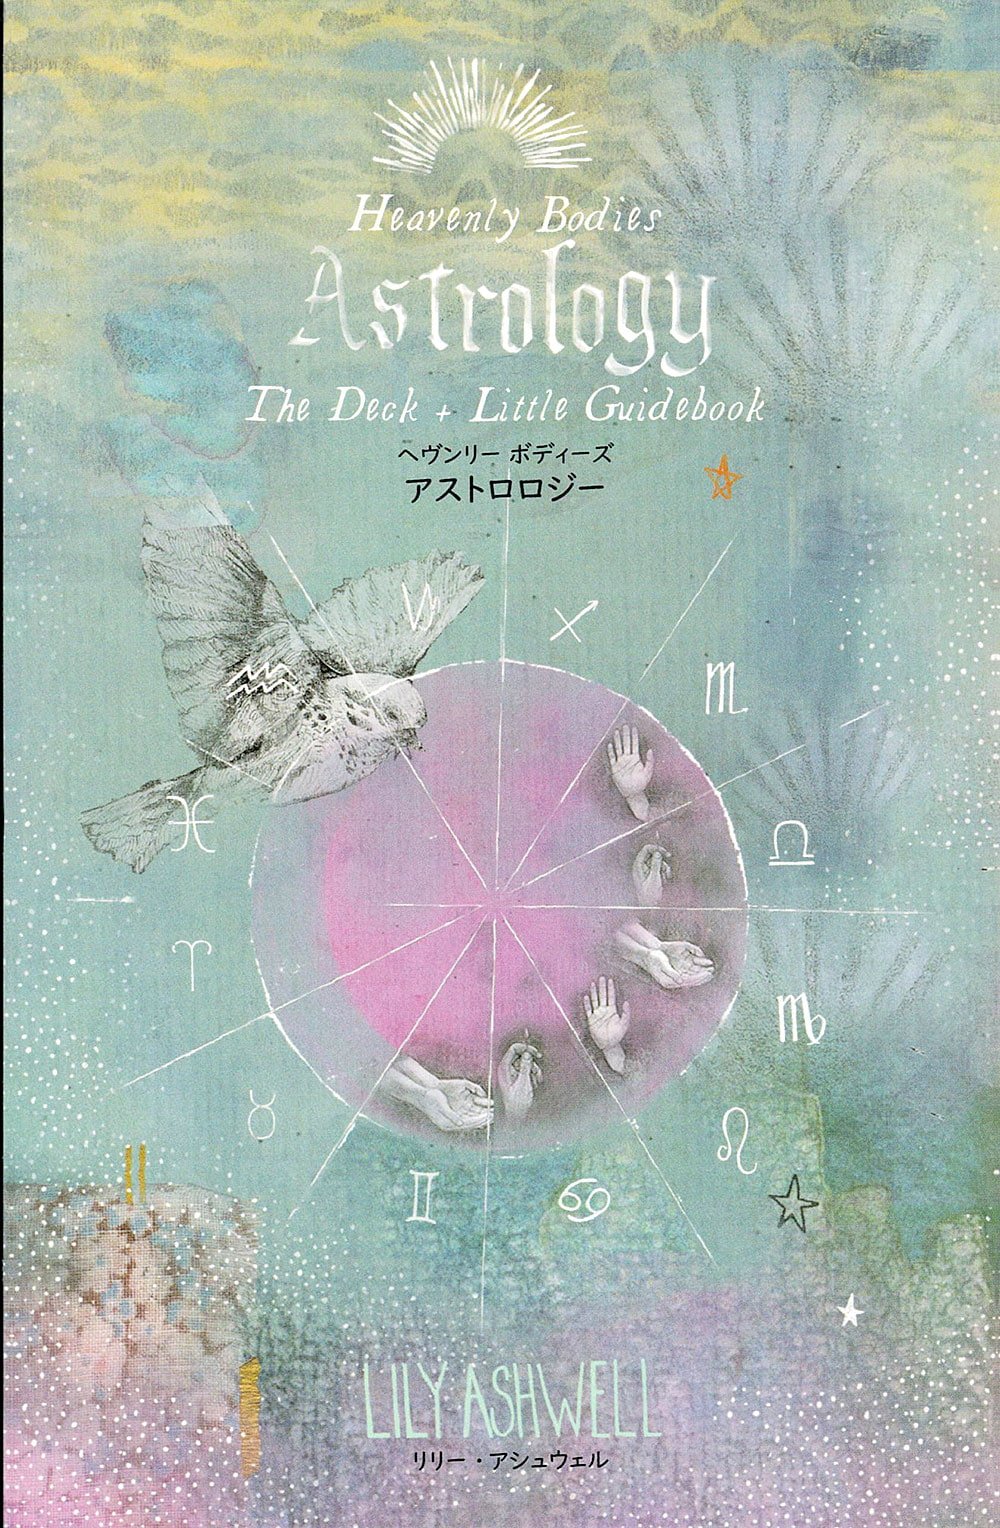 【送料無料】 ヘヴンリーボディーズアストロロジー Heavenly Bodies Astrology / オラクルカード 占い カード占い タロット ガイアブッ